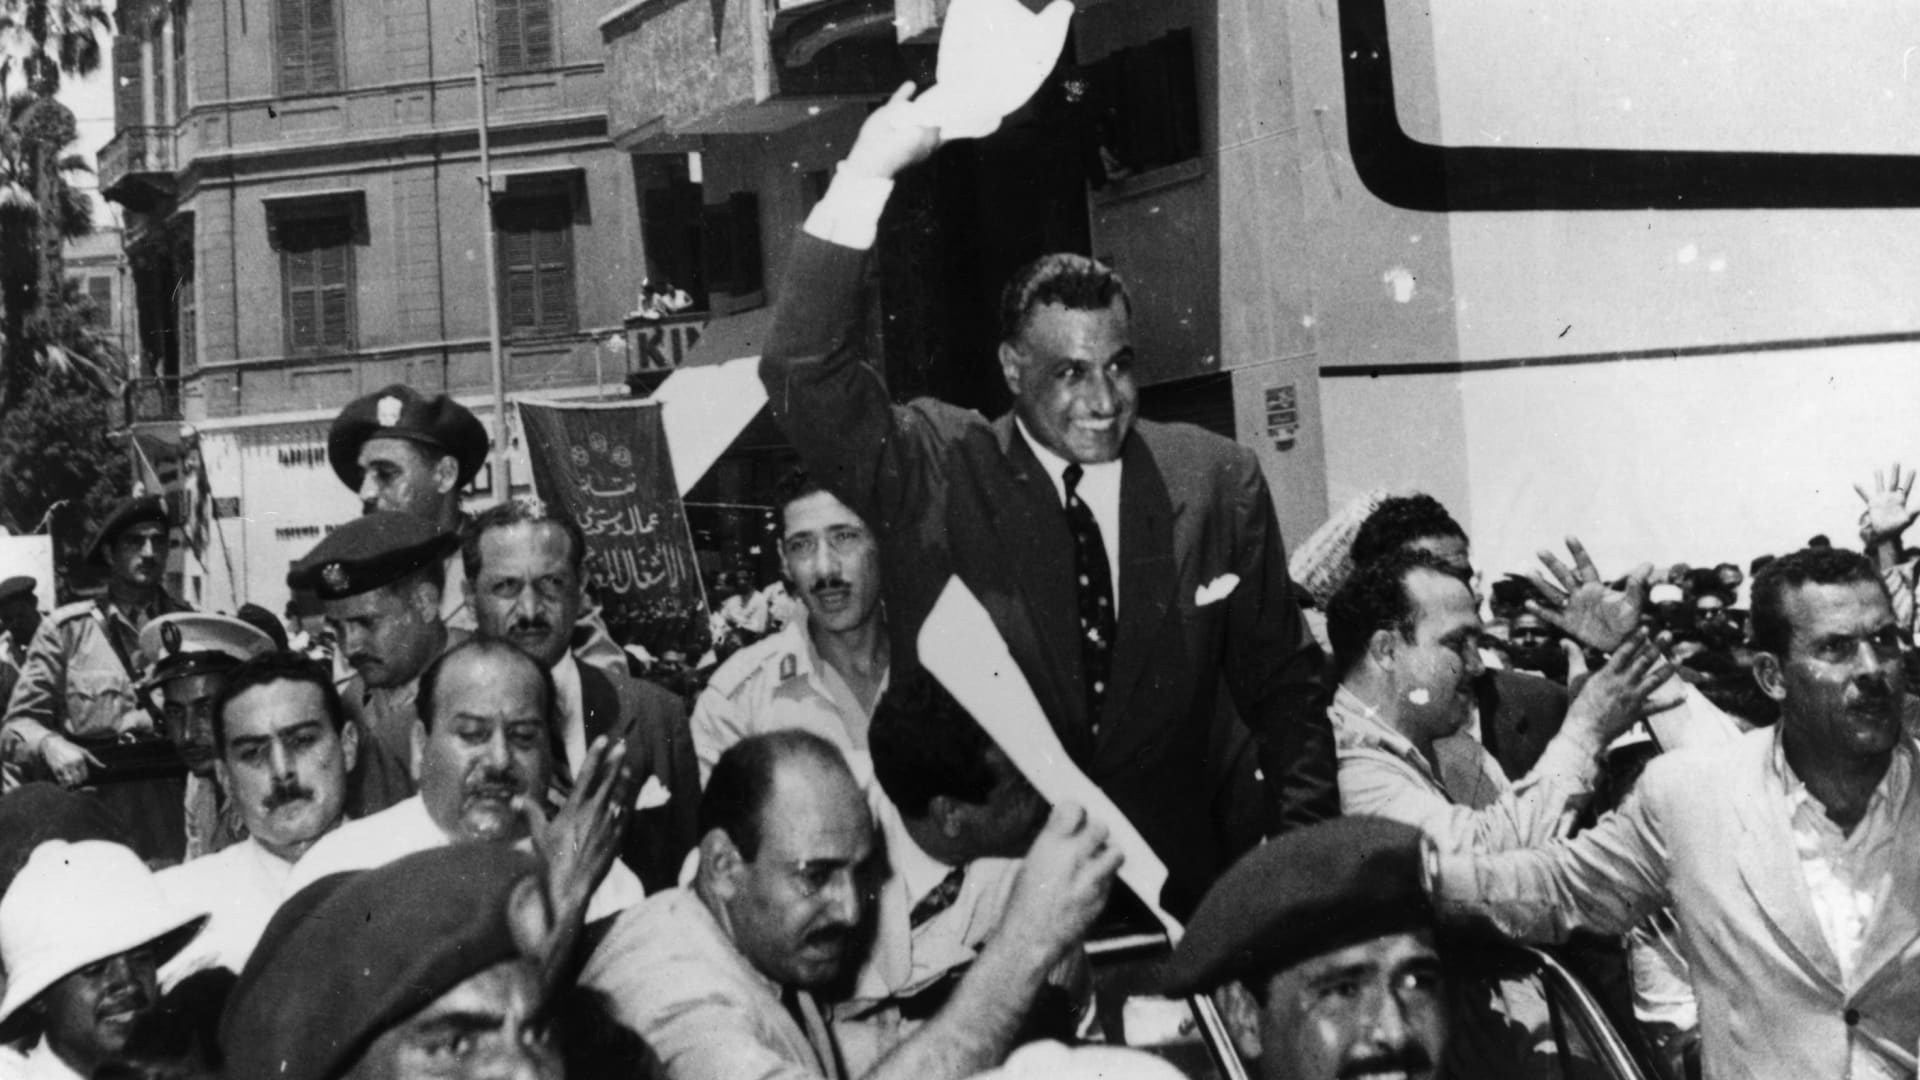 الرئيس المصري جمال عبدالناصر بعد عودته إلى القاهرة من الاسكندرية إثر إعلان تأميم قناة السويس 1956 